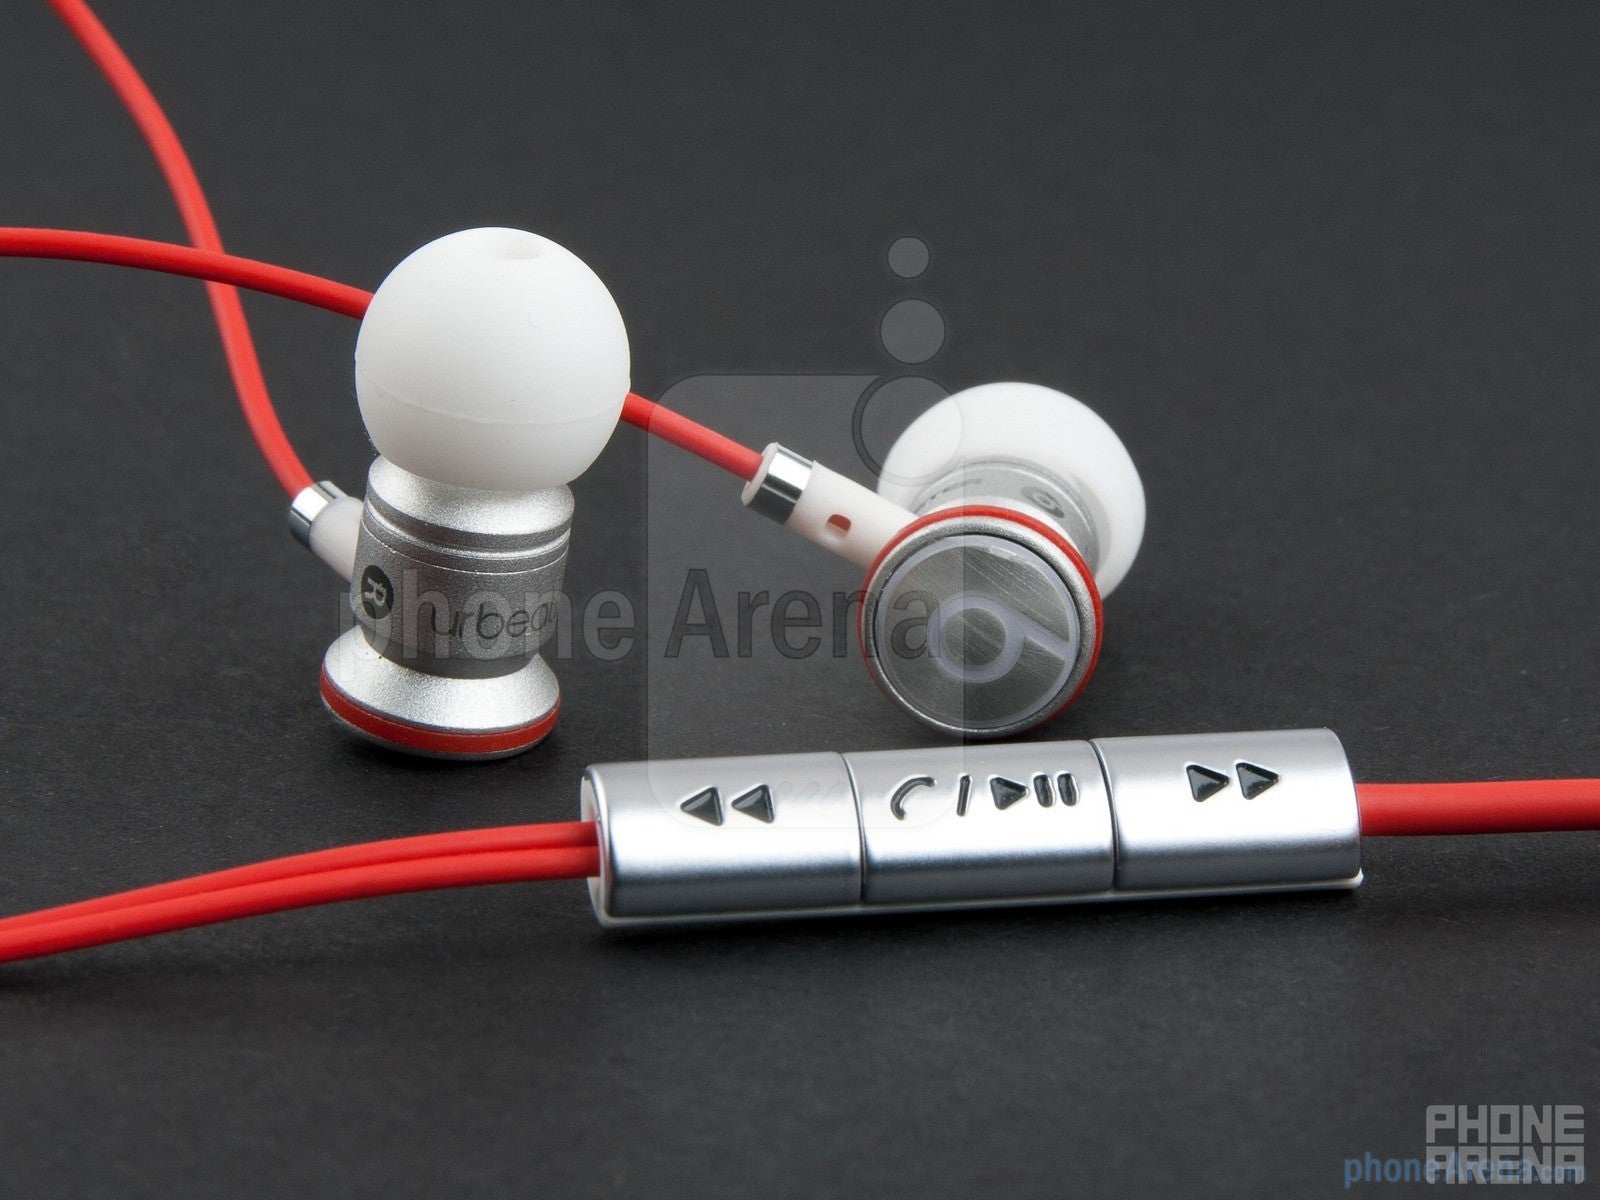 The Beats Audio headphones - HTC Sensation XL Review